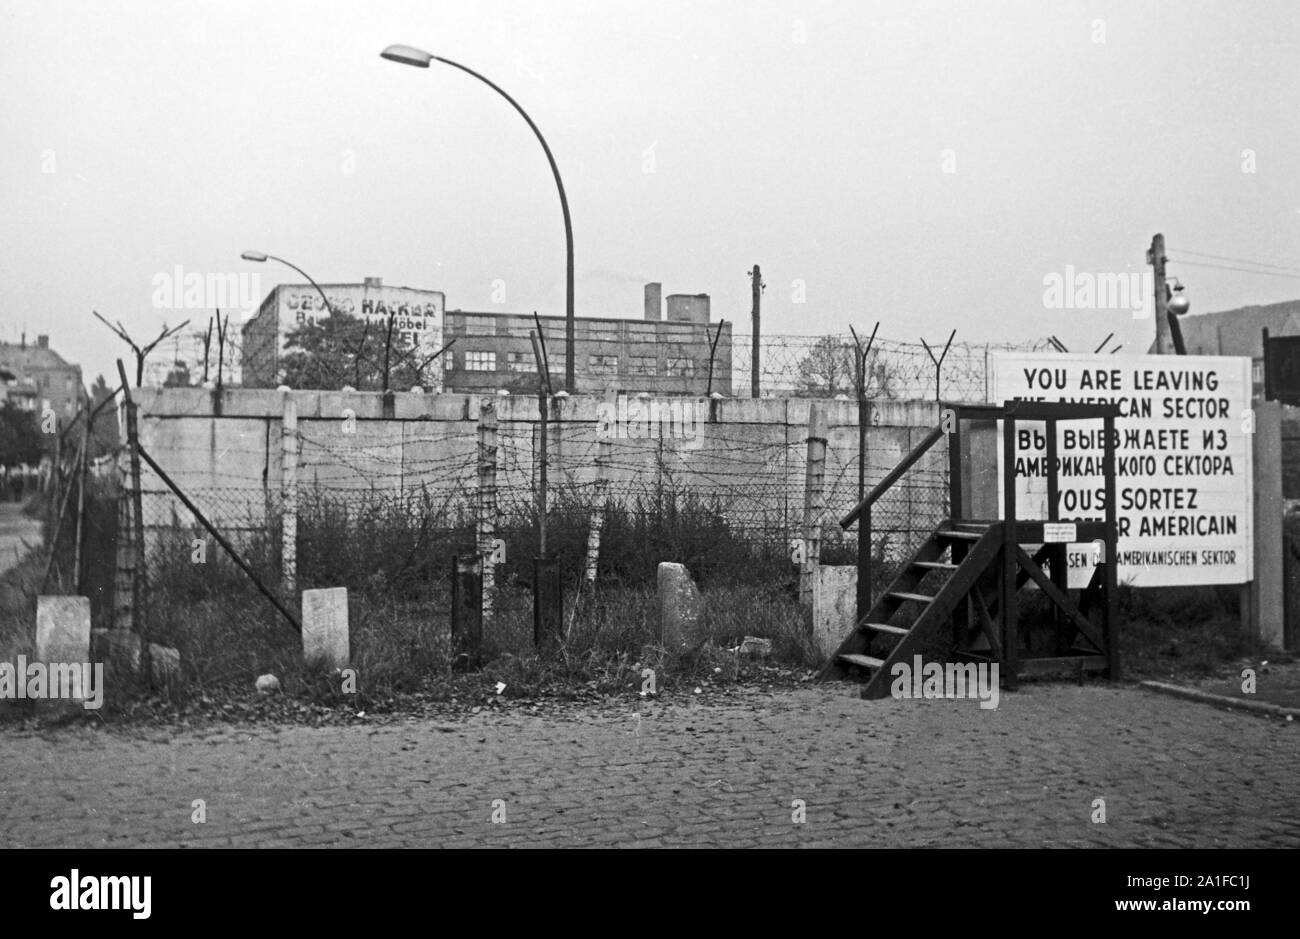 Grenze des amerikanischen Sektors an der Ecke Treptower und Heidelberger Straße in Berlin, Deutschland 1962. Border of the American sector on the corner of Treptower and Heidelberger street in Berlin, Germany 1962. Stock Photo